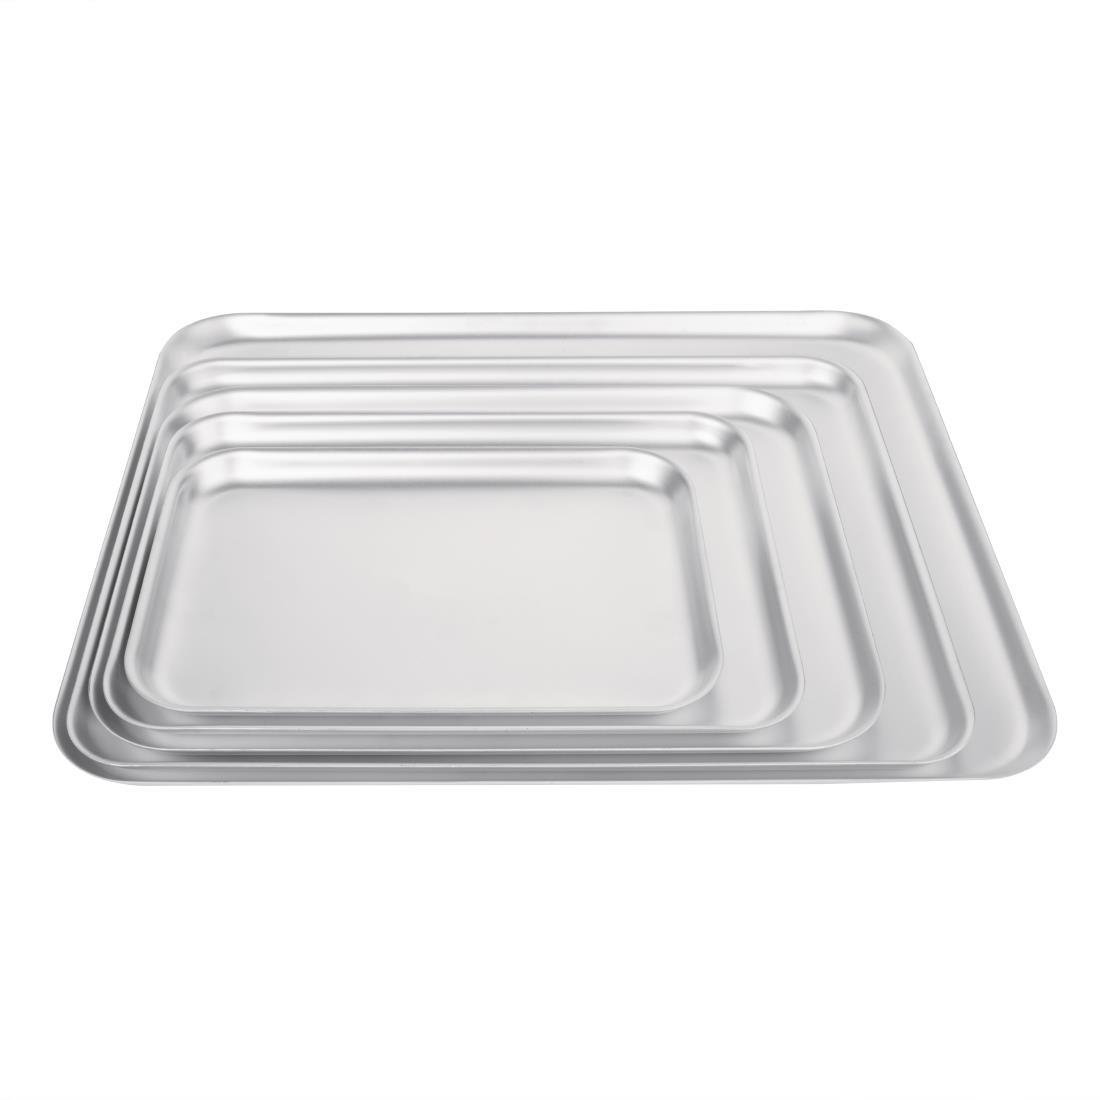 Vogue Aluminium Baking Tray 476 x 355mm - K445  - 3